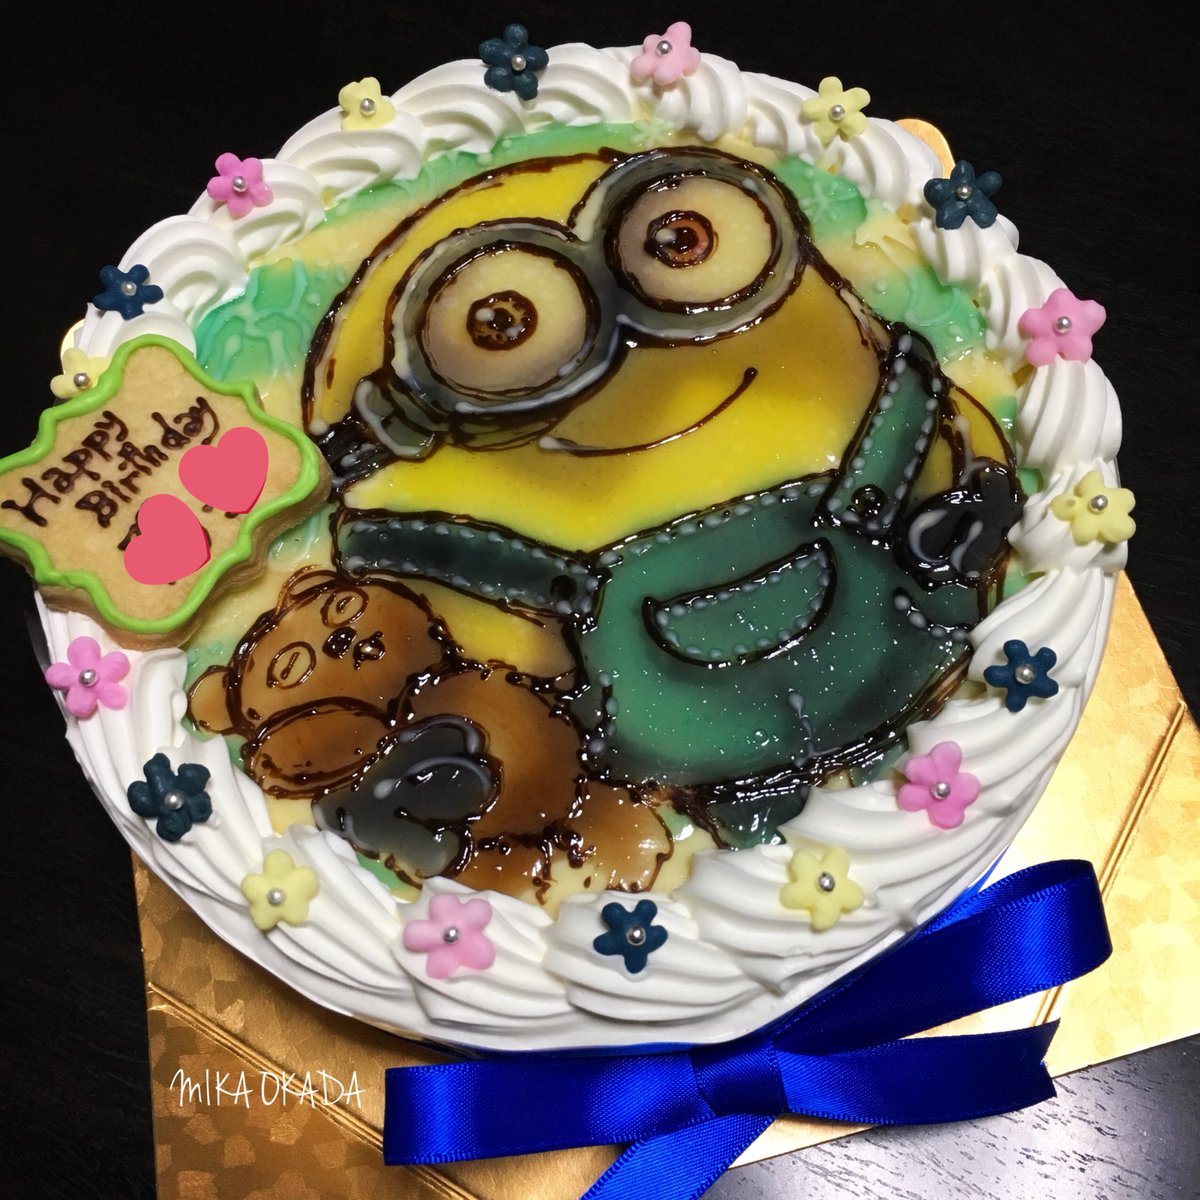 Originalcake Xelhes ゼルヘス ミニオンのイラストケーキ ボブは一番人気ですね ミニオン ボブ Minions イラストケーキ ケーキ Cake Partycake 誕生日 ハッピーバースデー おめでとう Happybirthday